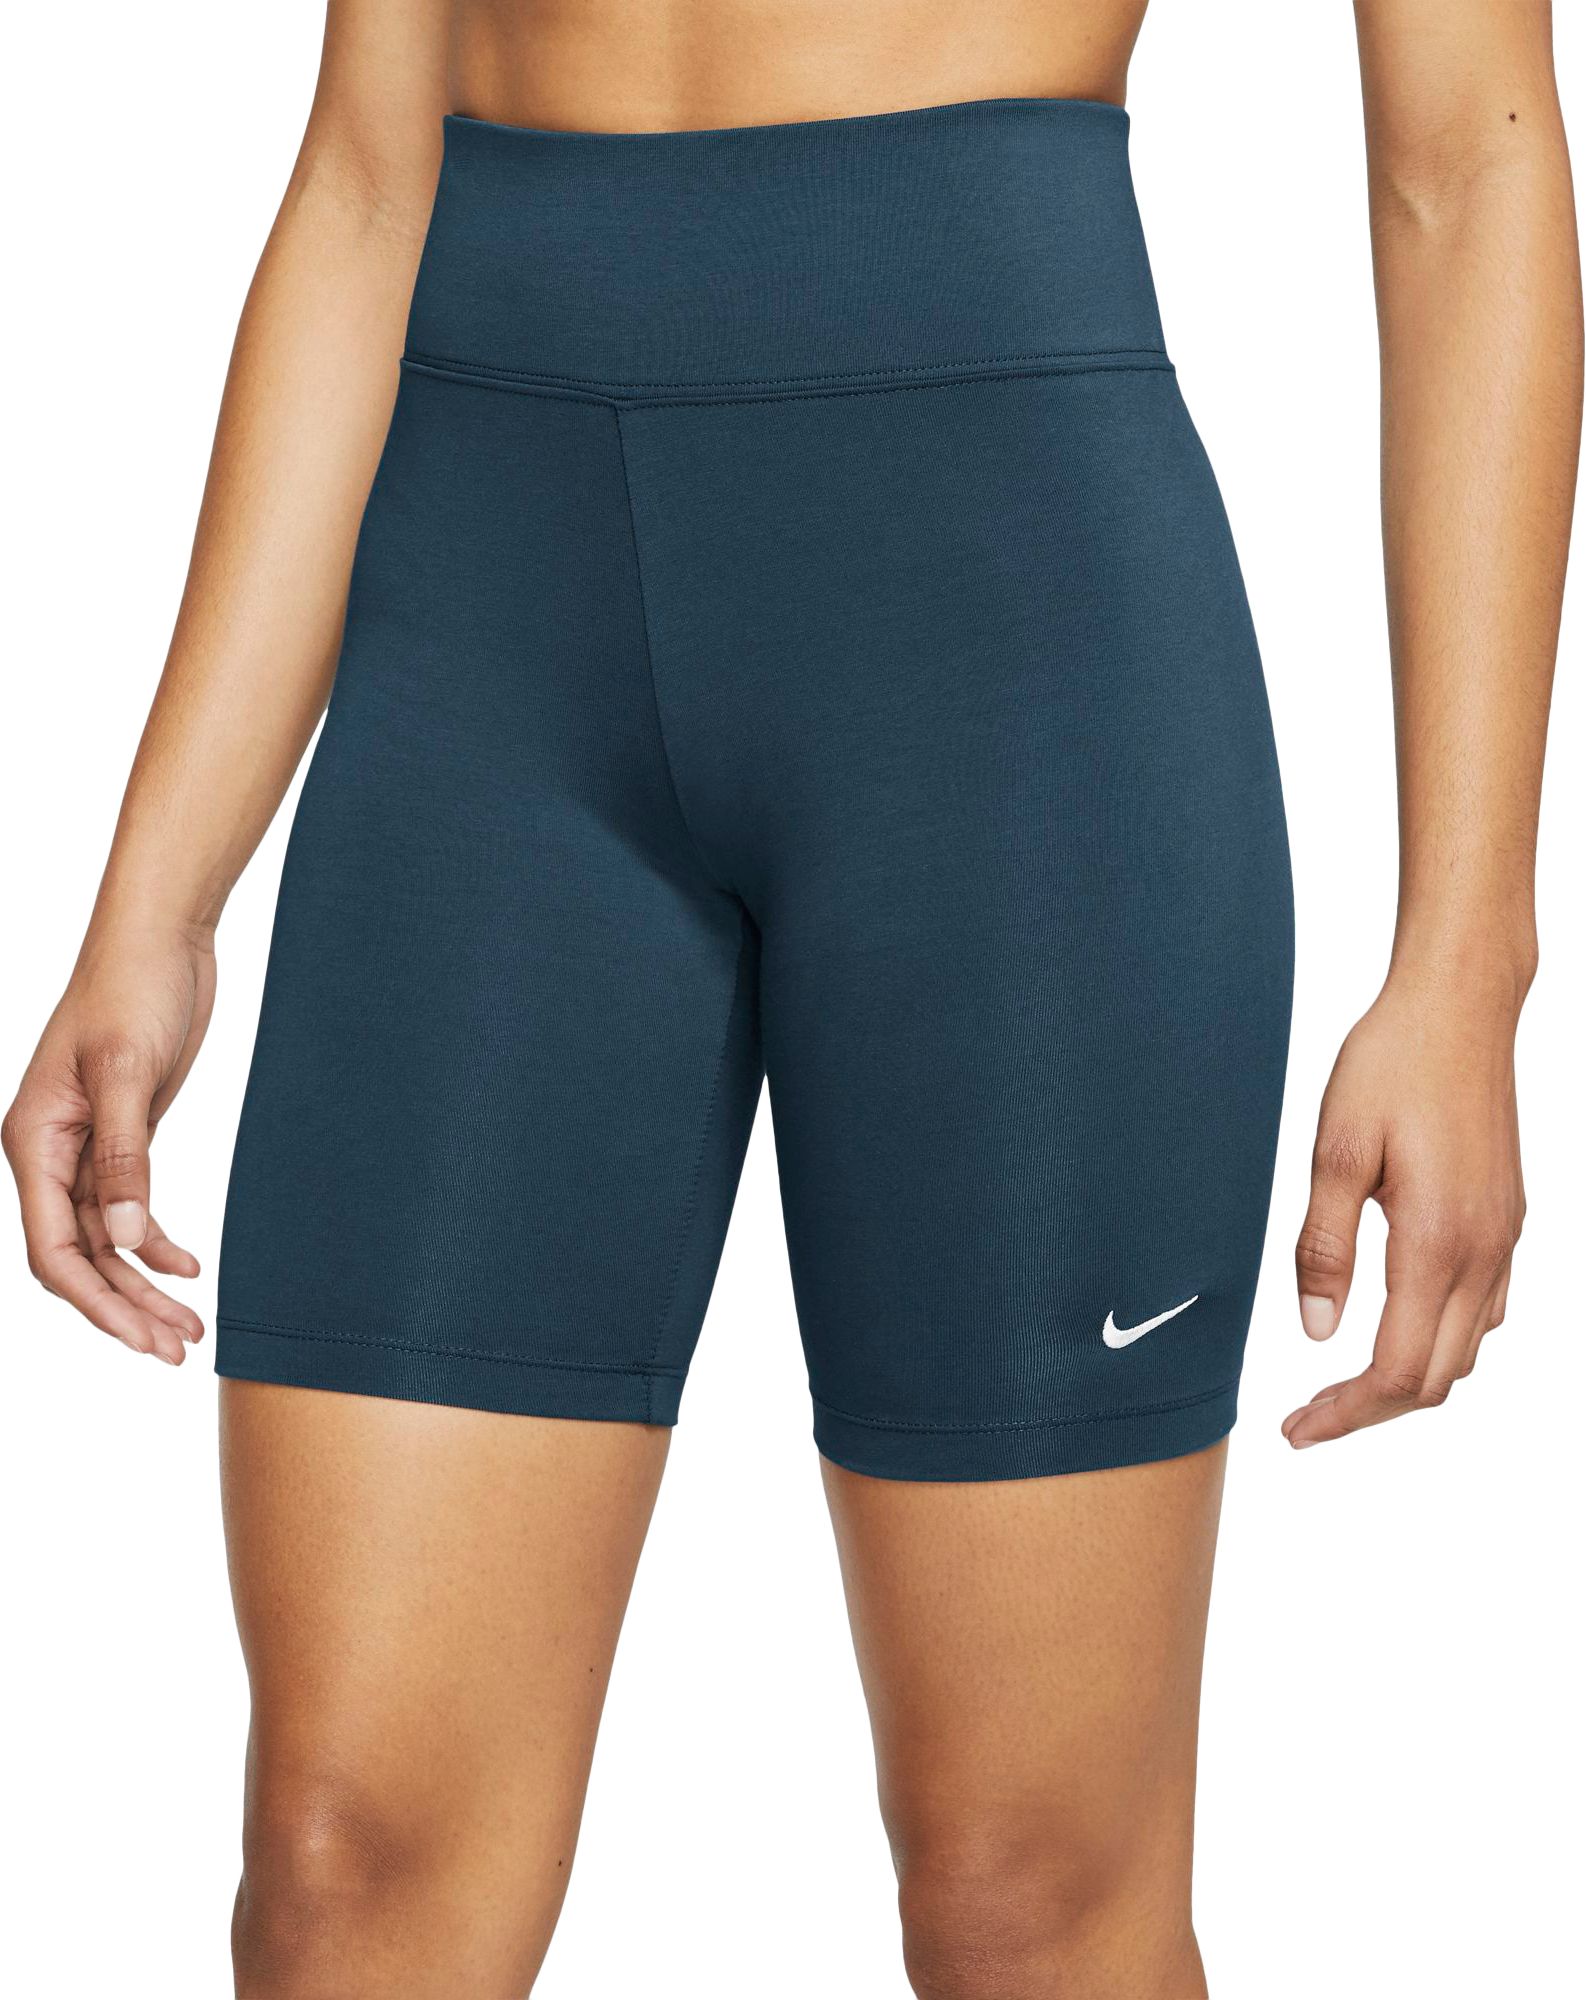 Nike Women's Bike Shorts | Free 